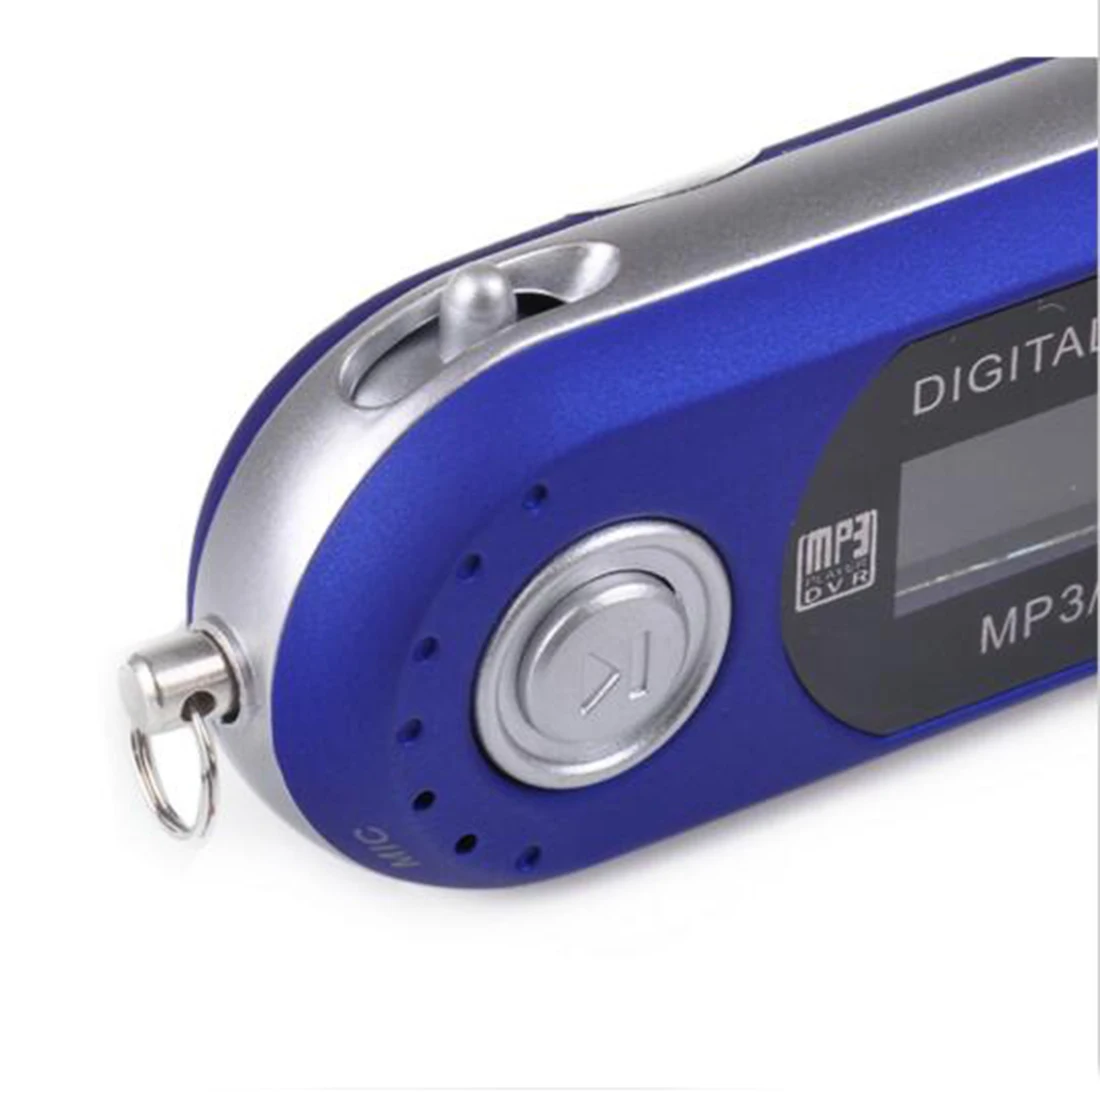 Marsnaska модный портативный мини 4 Гб памяти USB MP3 музыкальный плеер HD lcd экран Поддержка диктофона FM радио MP3